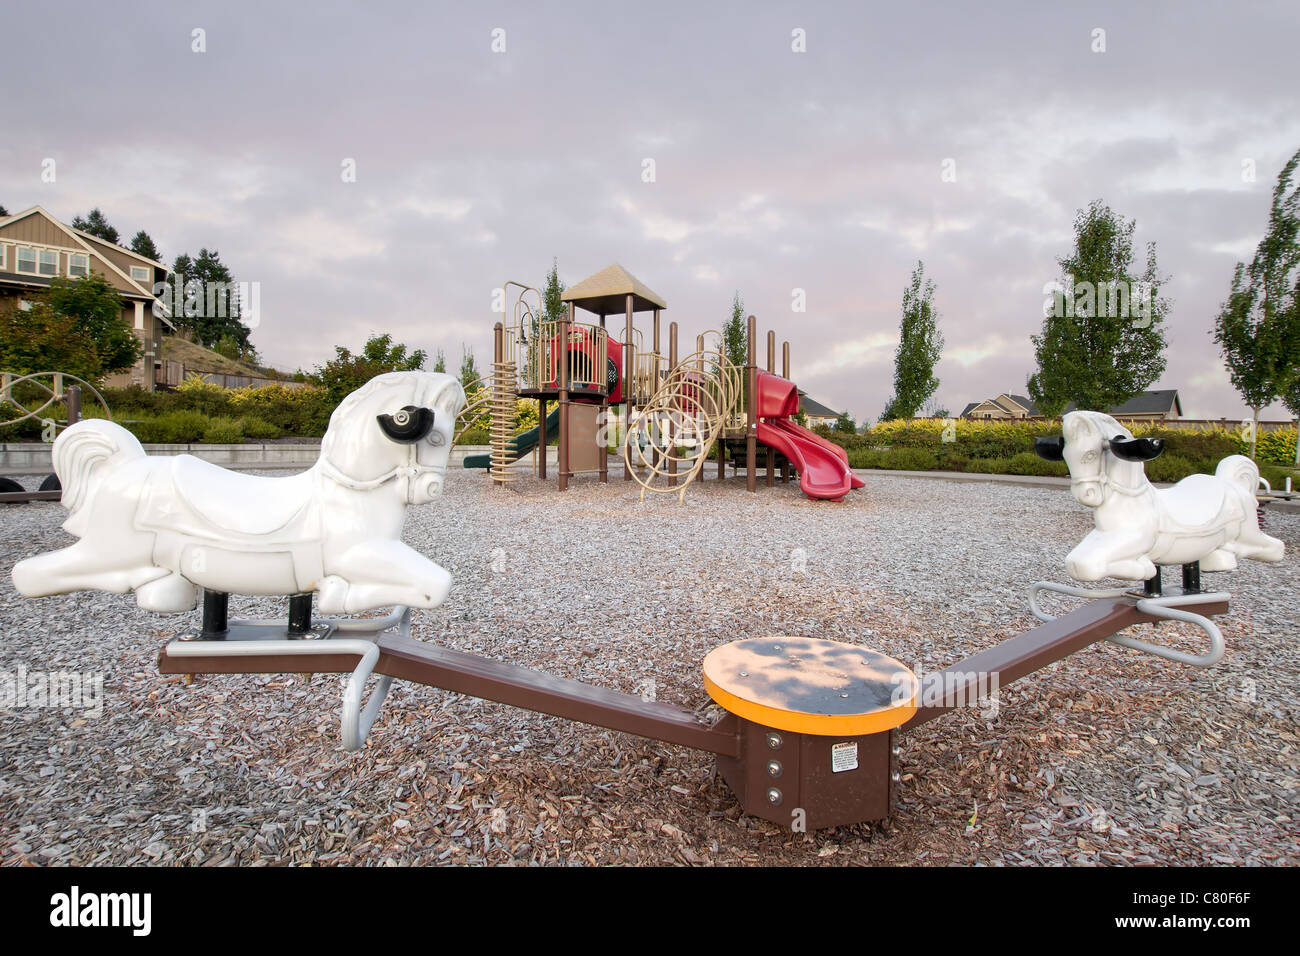 Vicinanze Parco pubblico Parco giochi per bambini in area suburbana con altalena Foto Stock